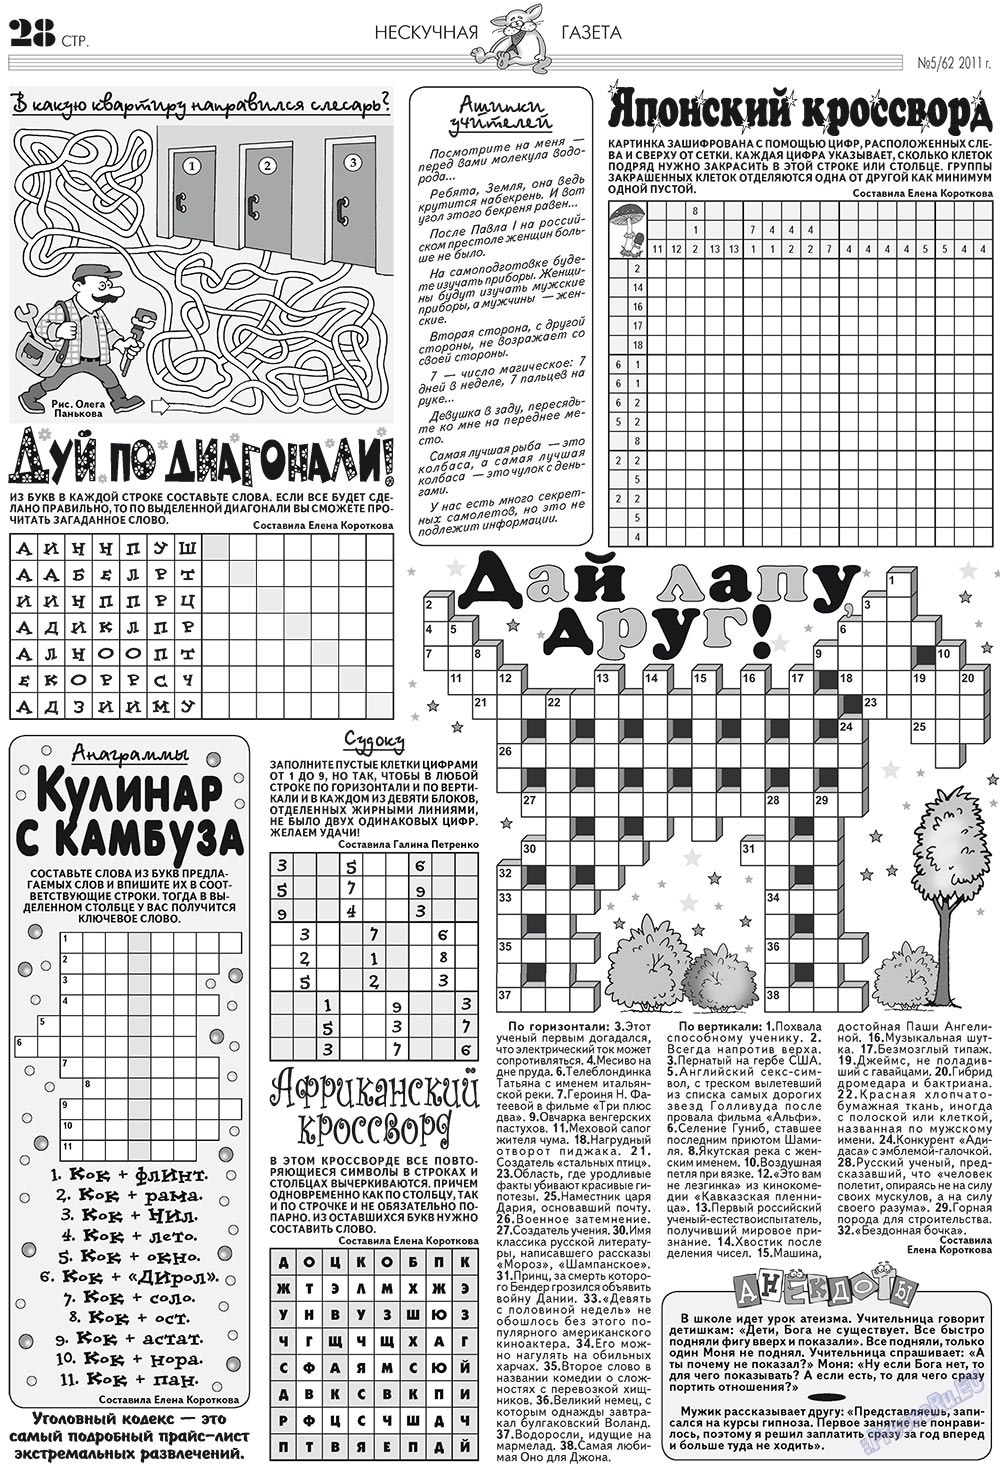 Нескучная газета, журнал. 2011 №5 стр.24